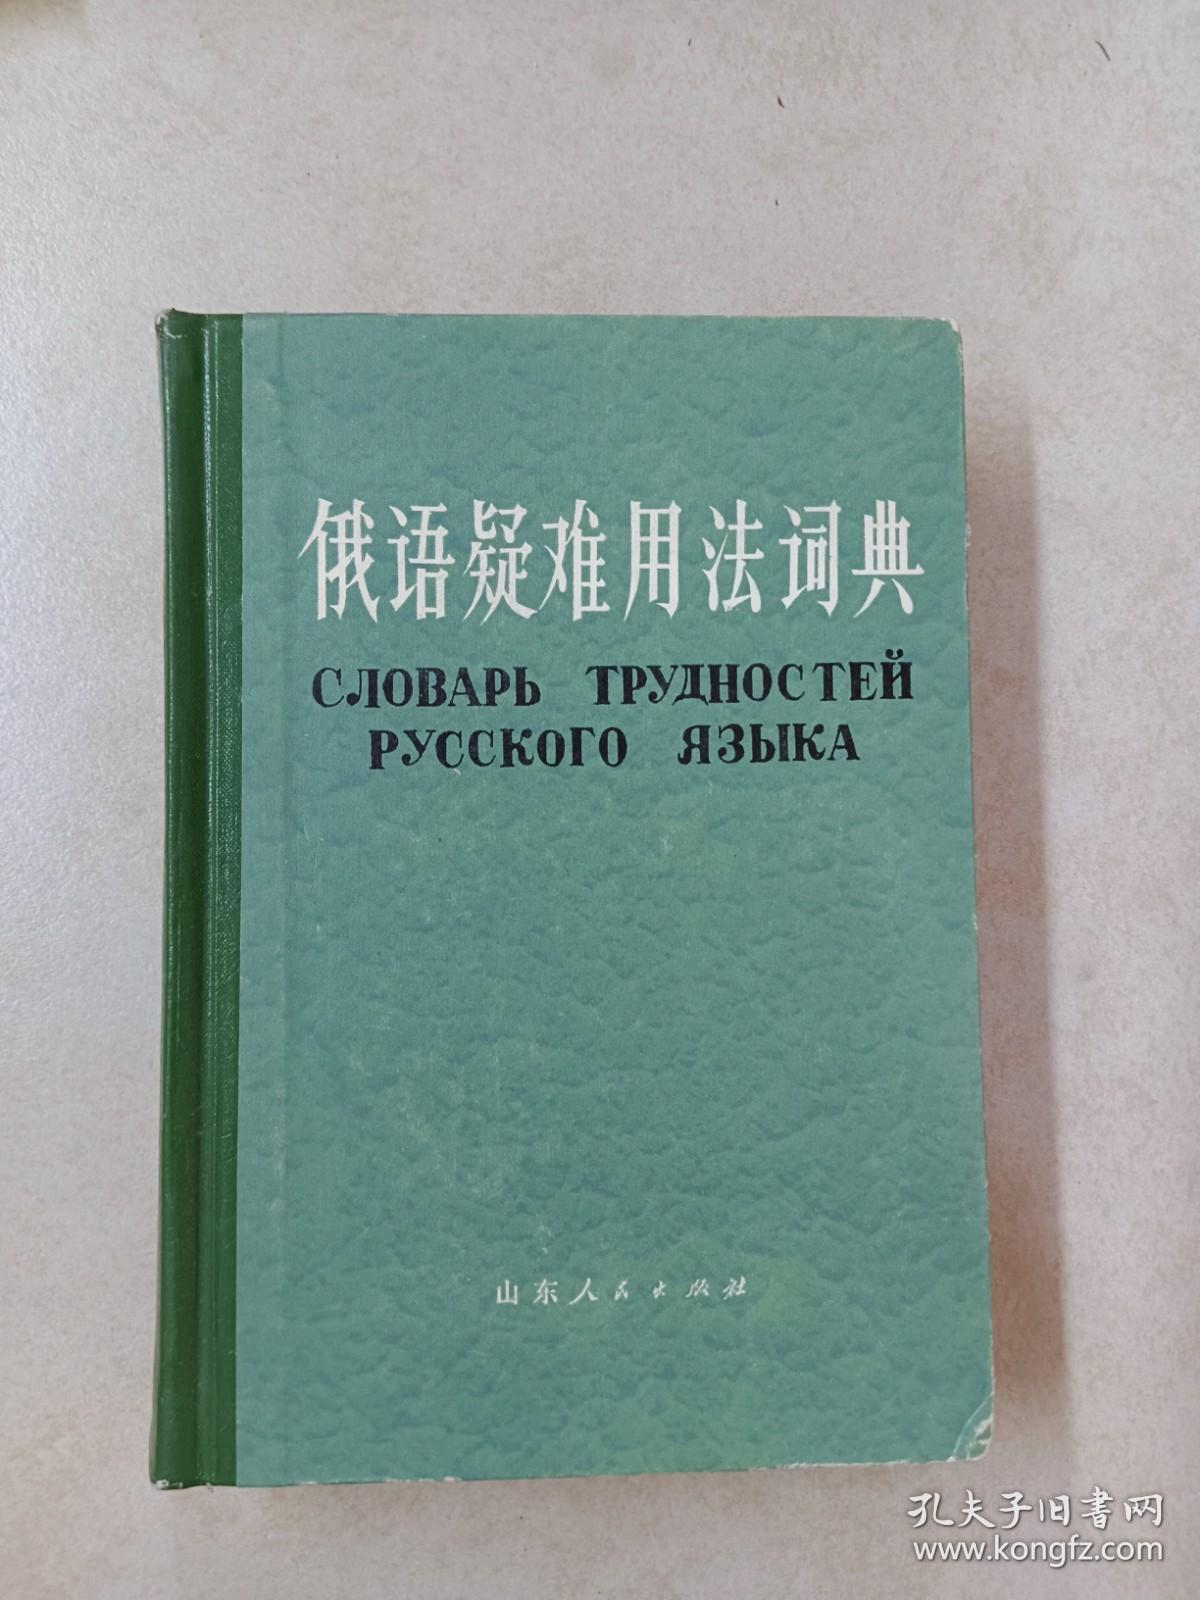 俄语疑难用法词典